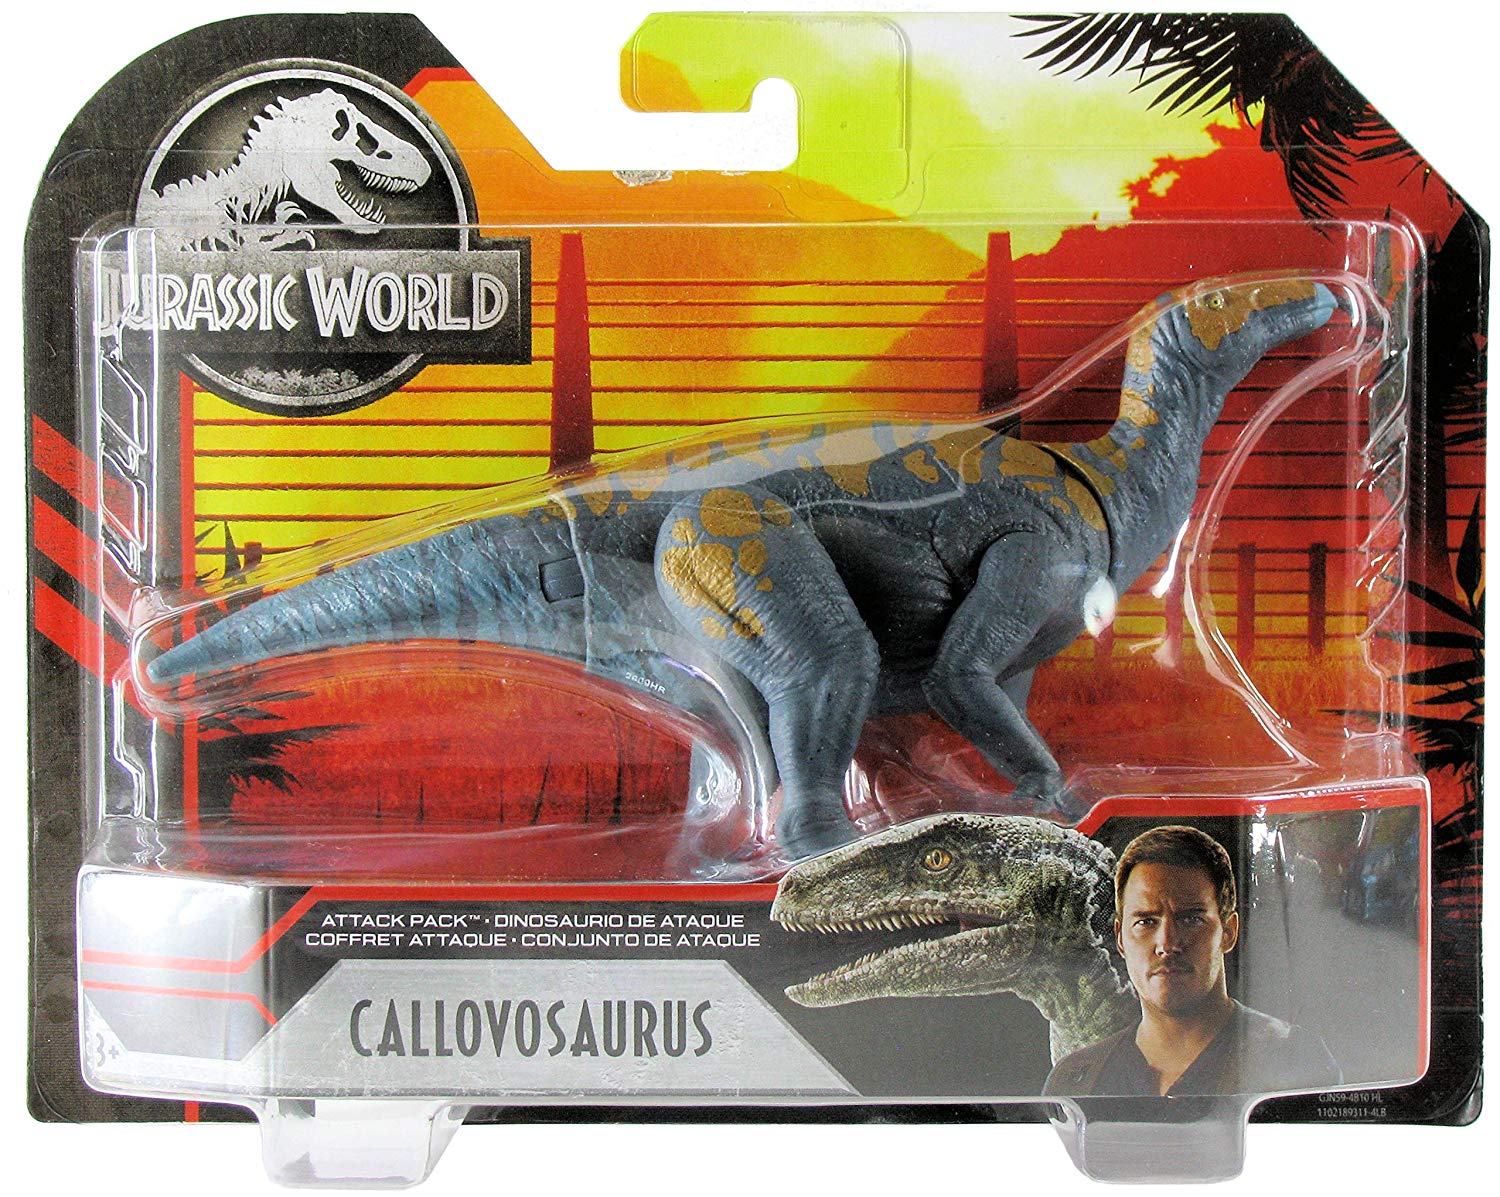 Купить нападение. Игрушки Jurassic World Mattel 2020. Фигурка Jurassic World динозавр Постозух. Постозух игрушка мир Юрского периода. Пирораптор игрушка Jurassic World.